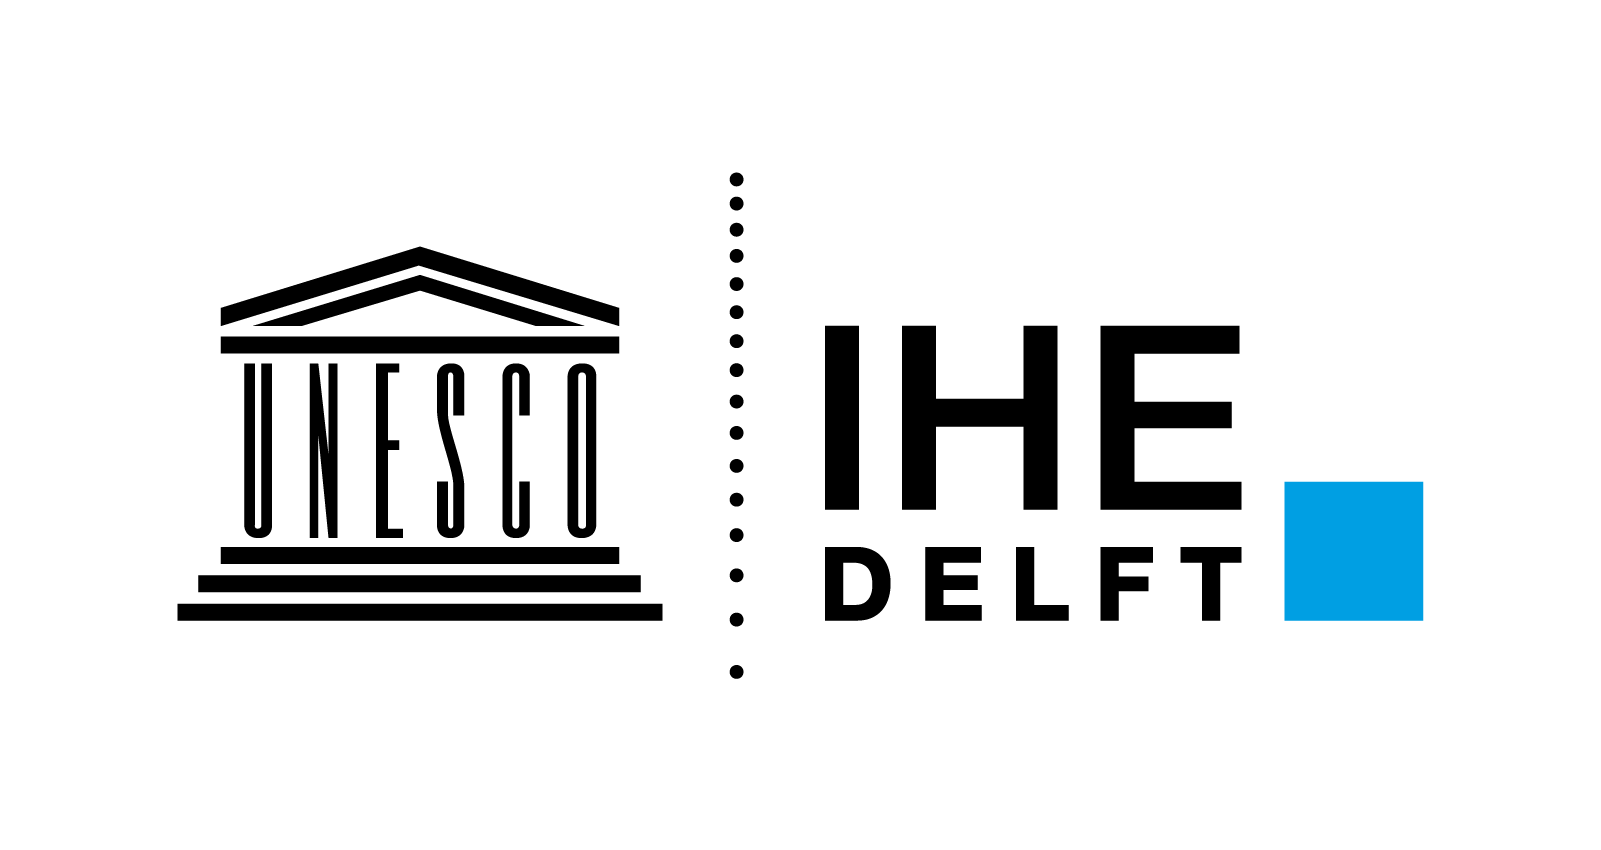 IHE delft logo